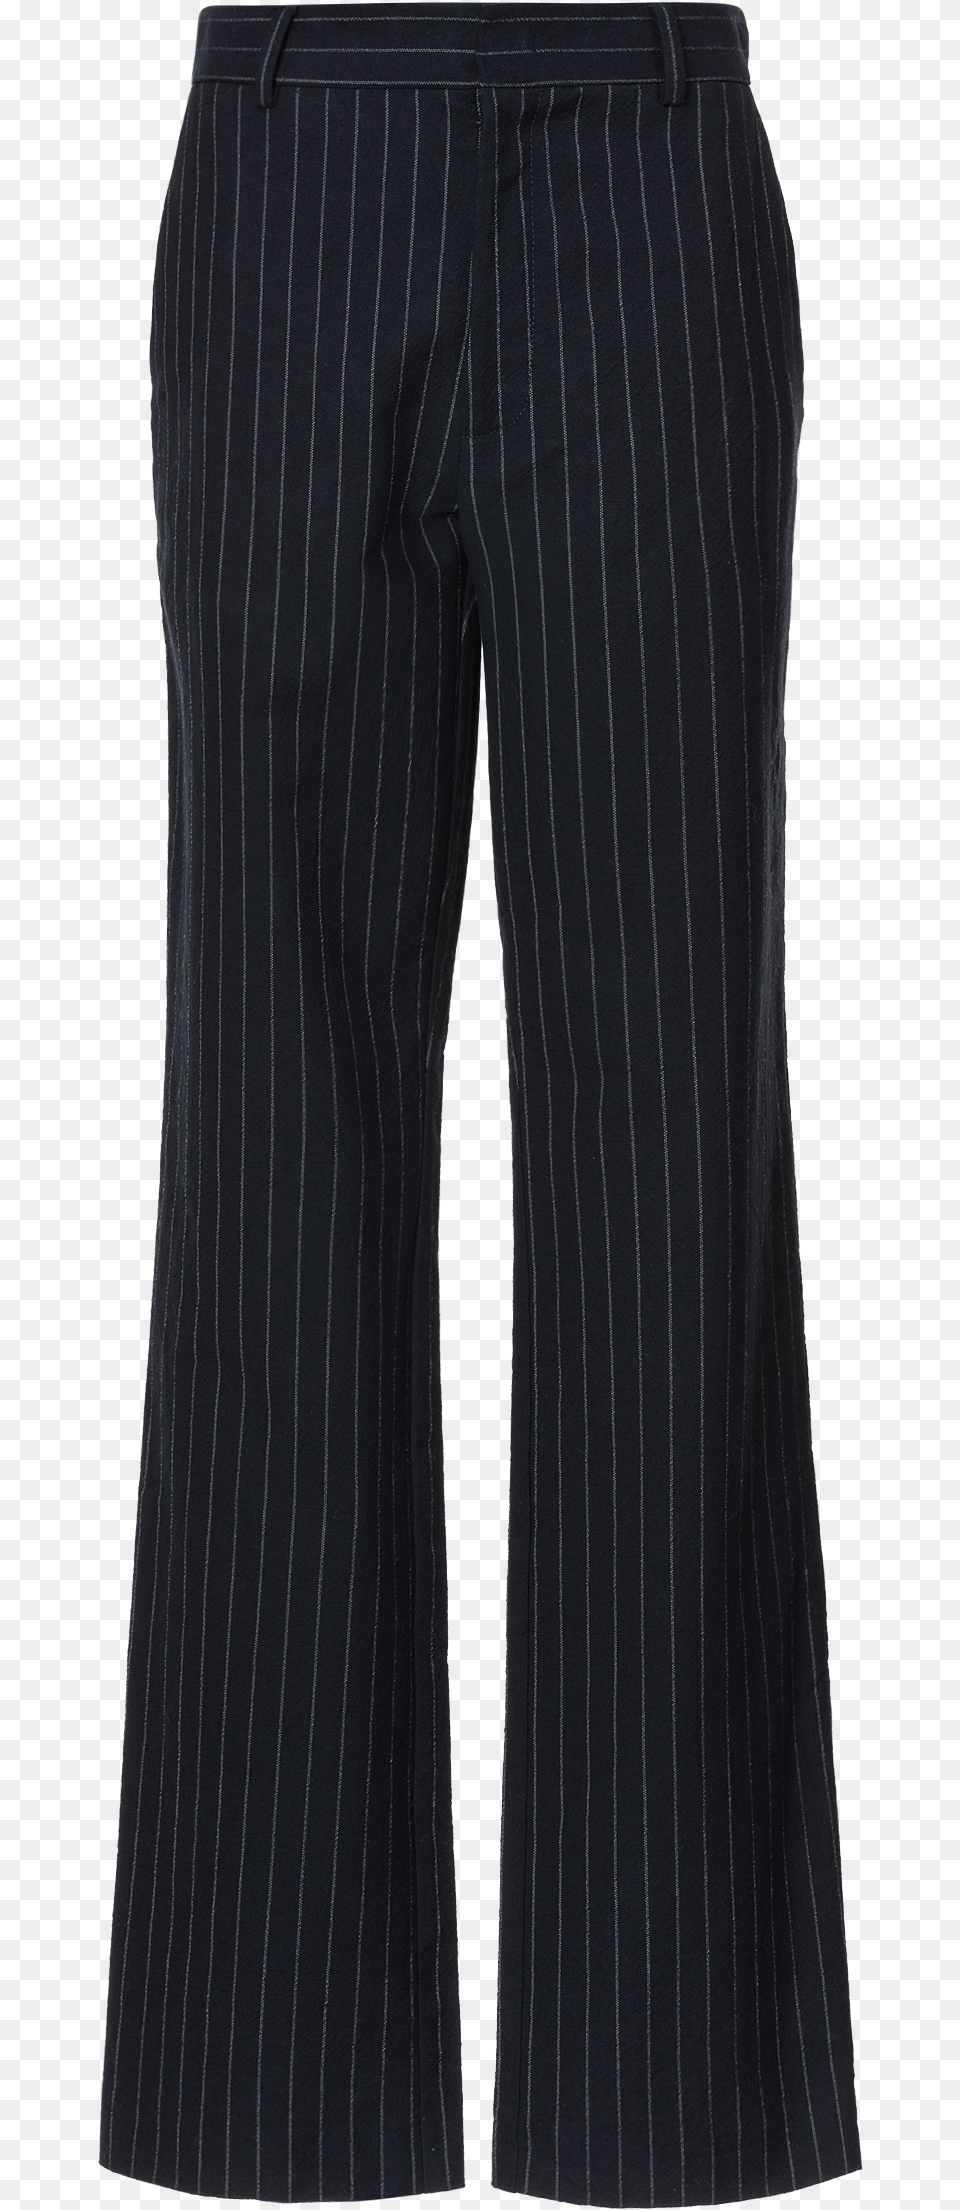 1510 1 1 Pocket, Clothing, Pants, Shorts, Home Decor Png Image